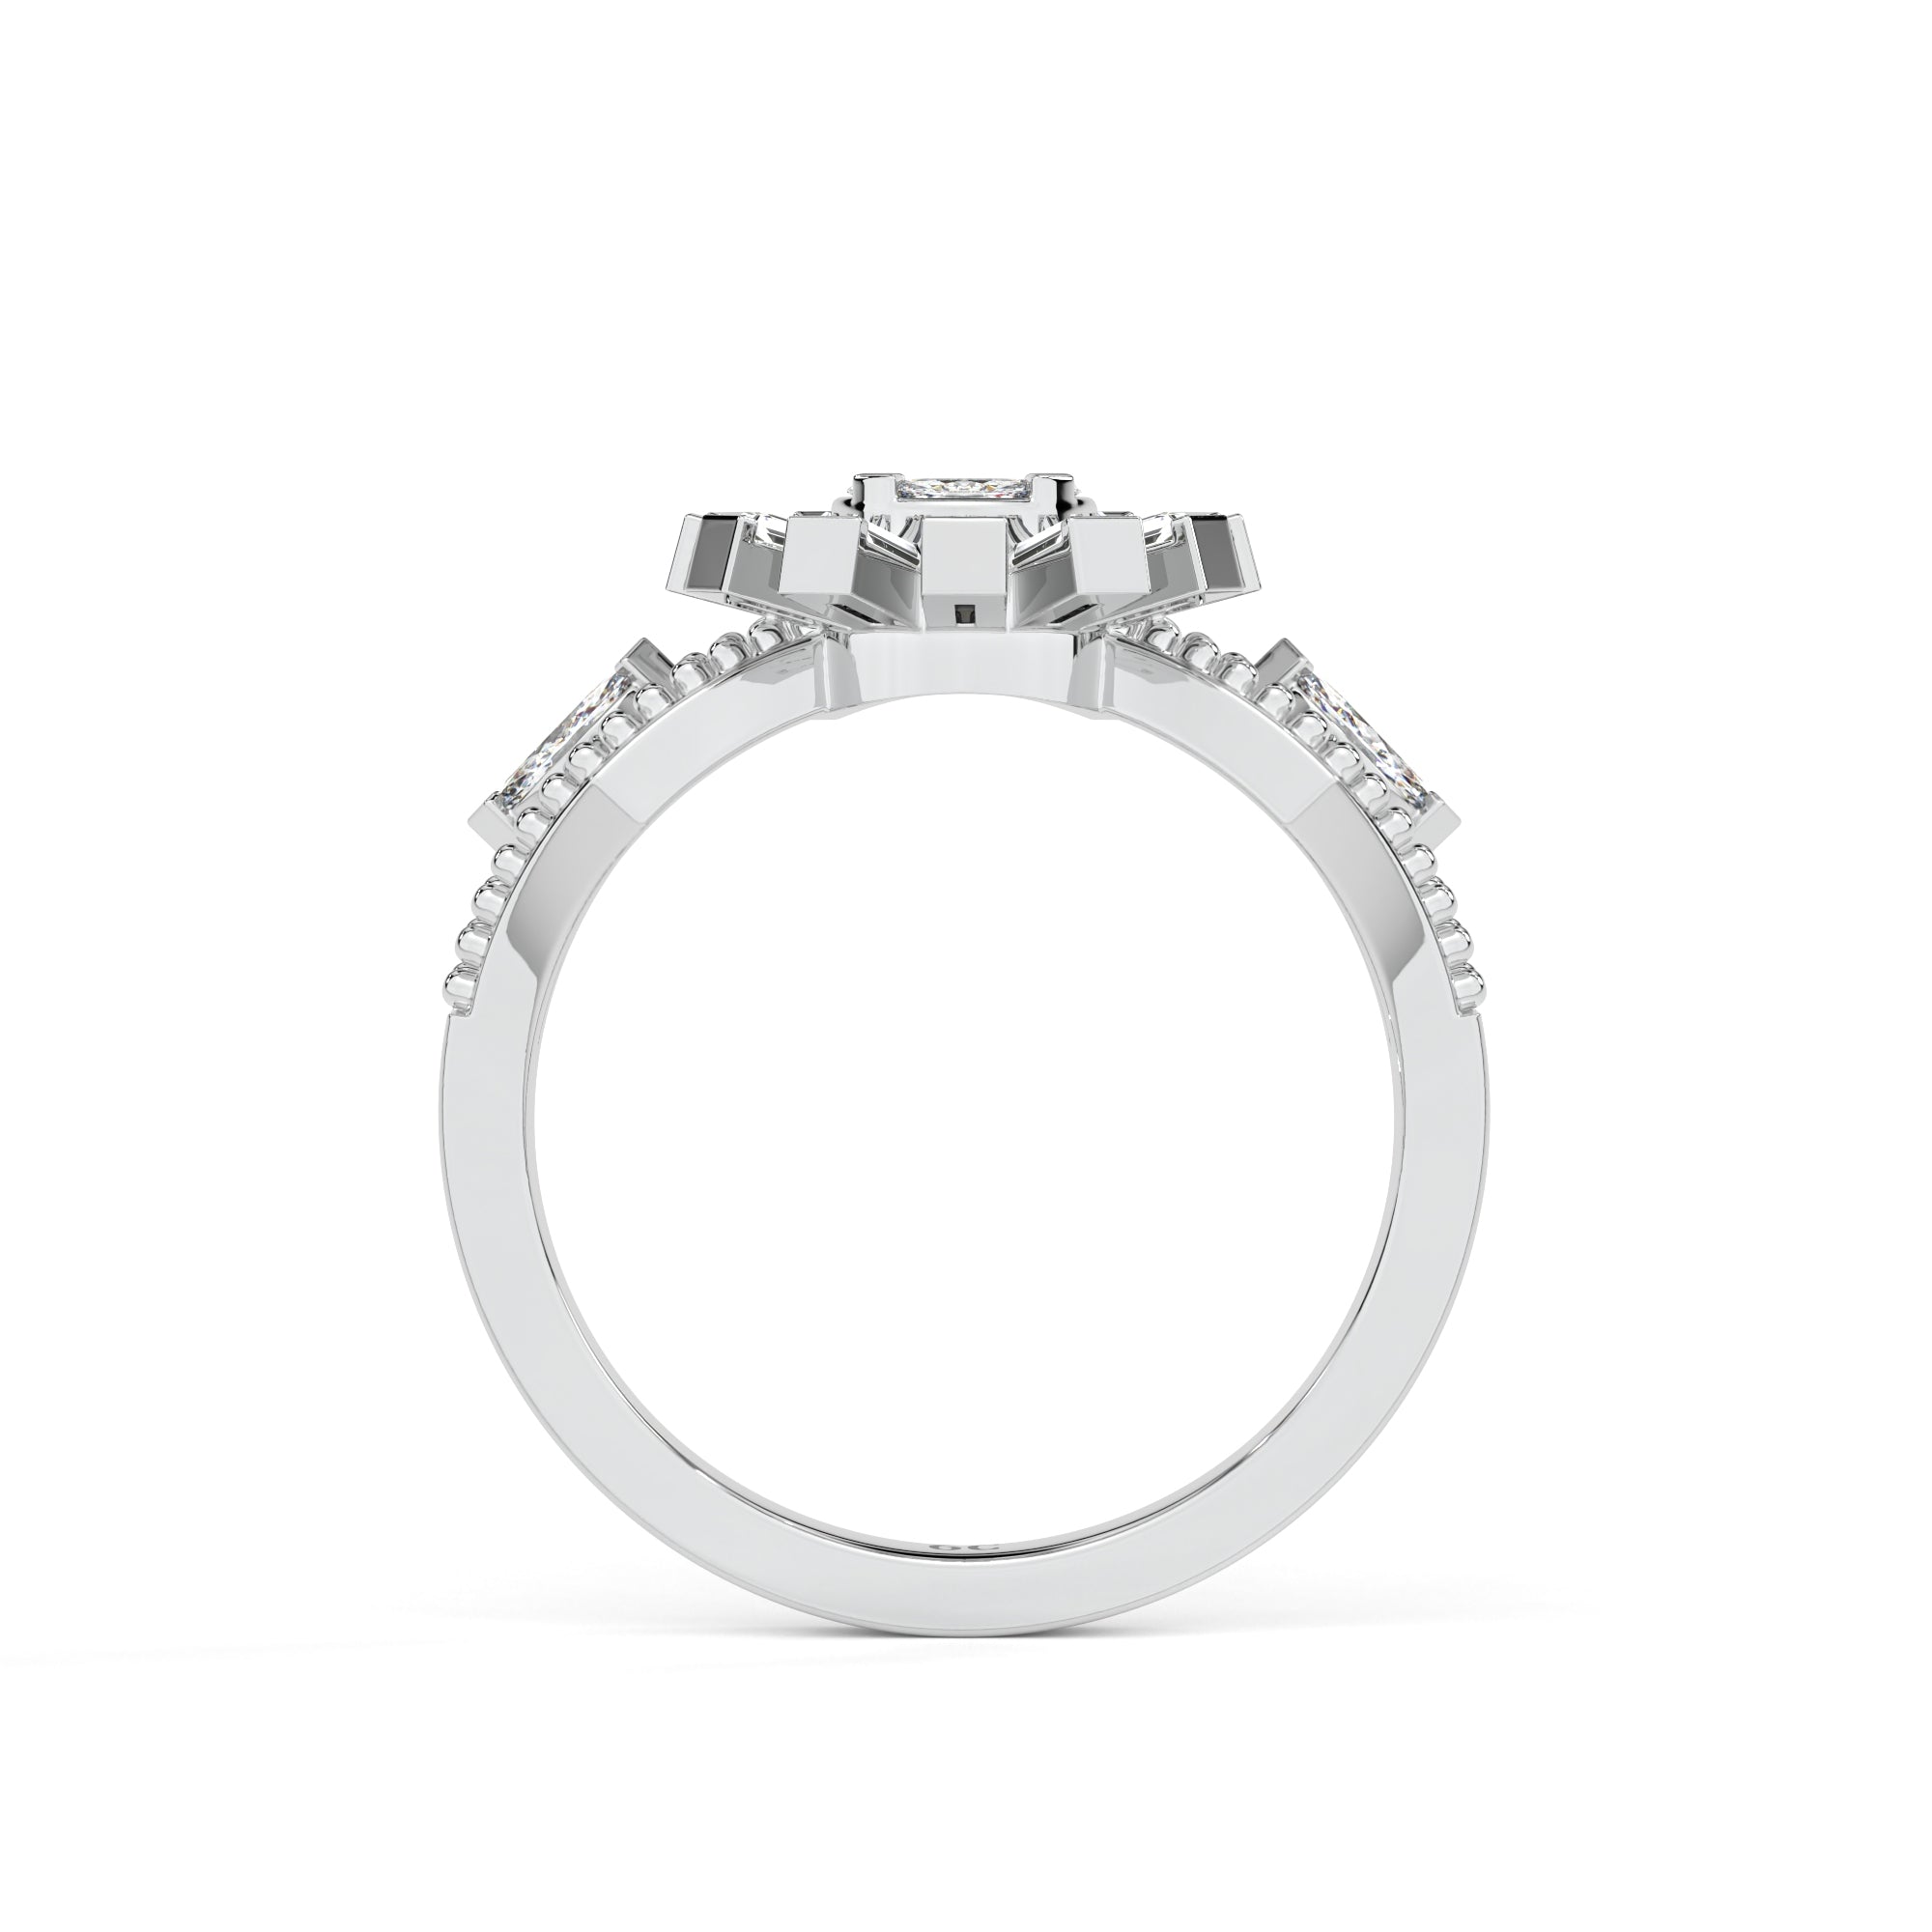 Sparkling Sunlight Diamond Ring